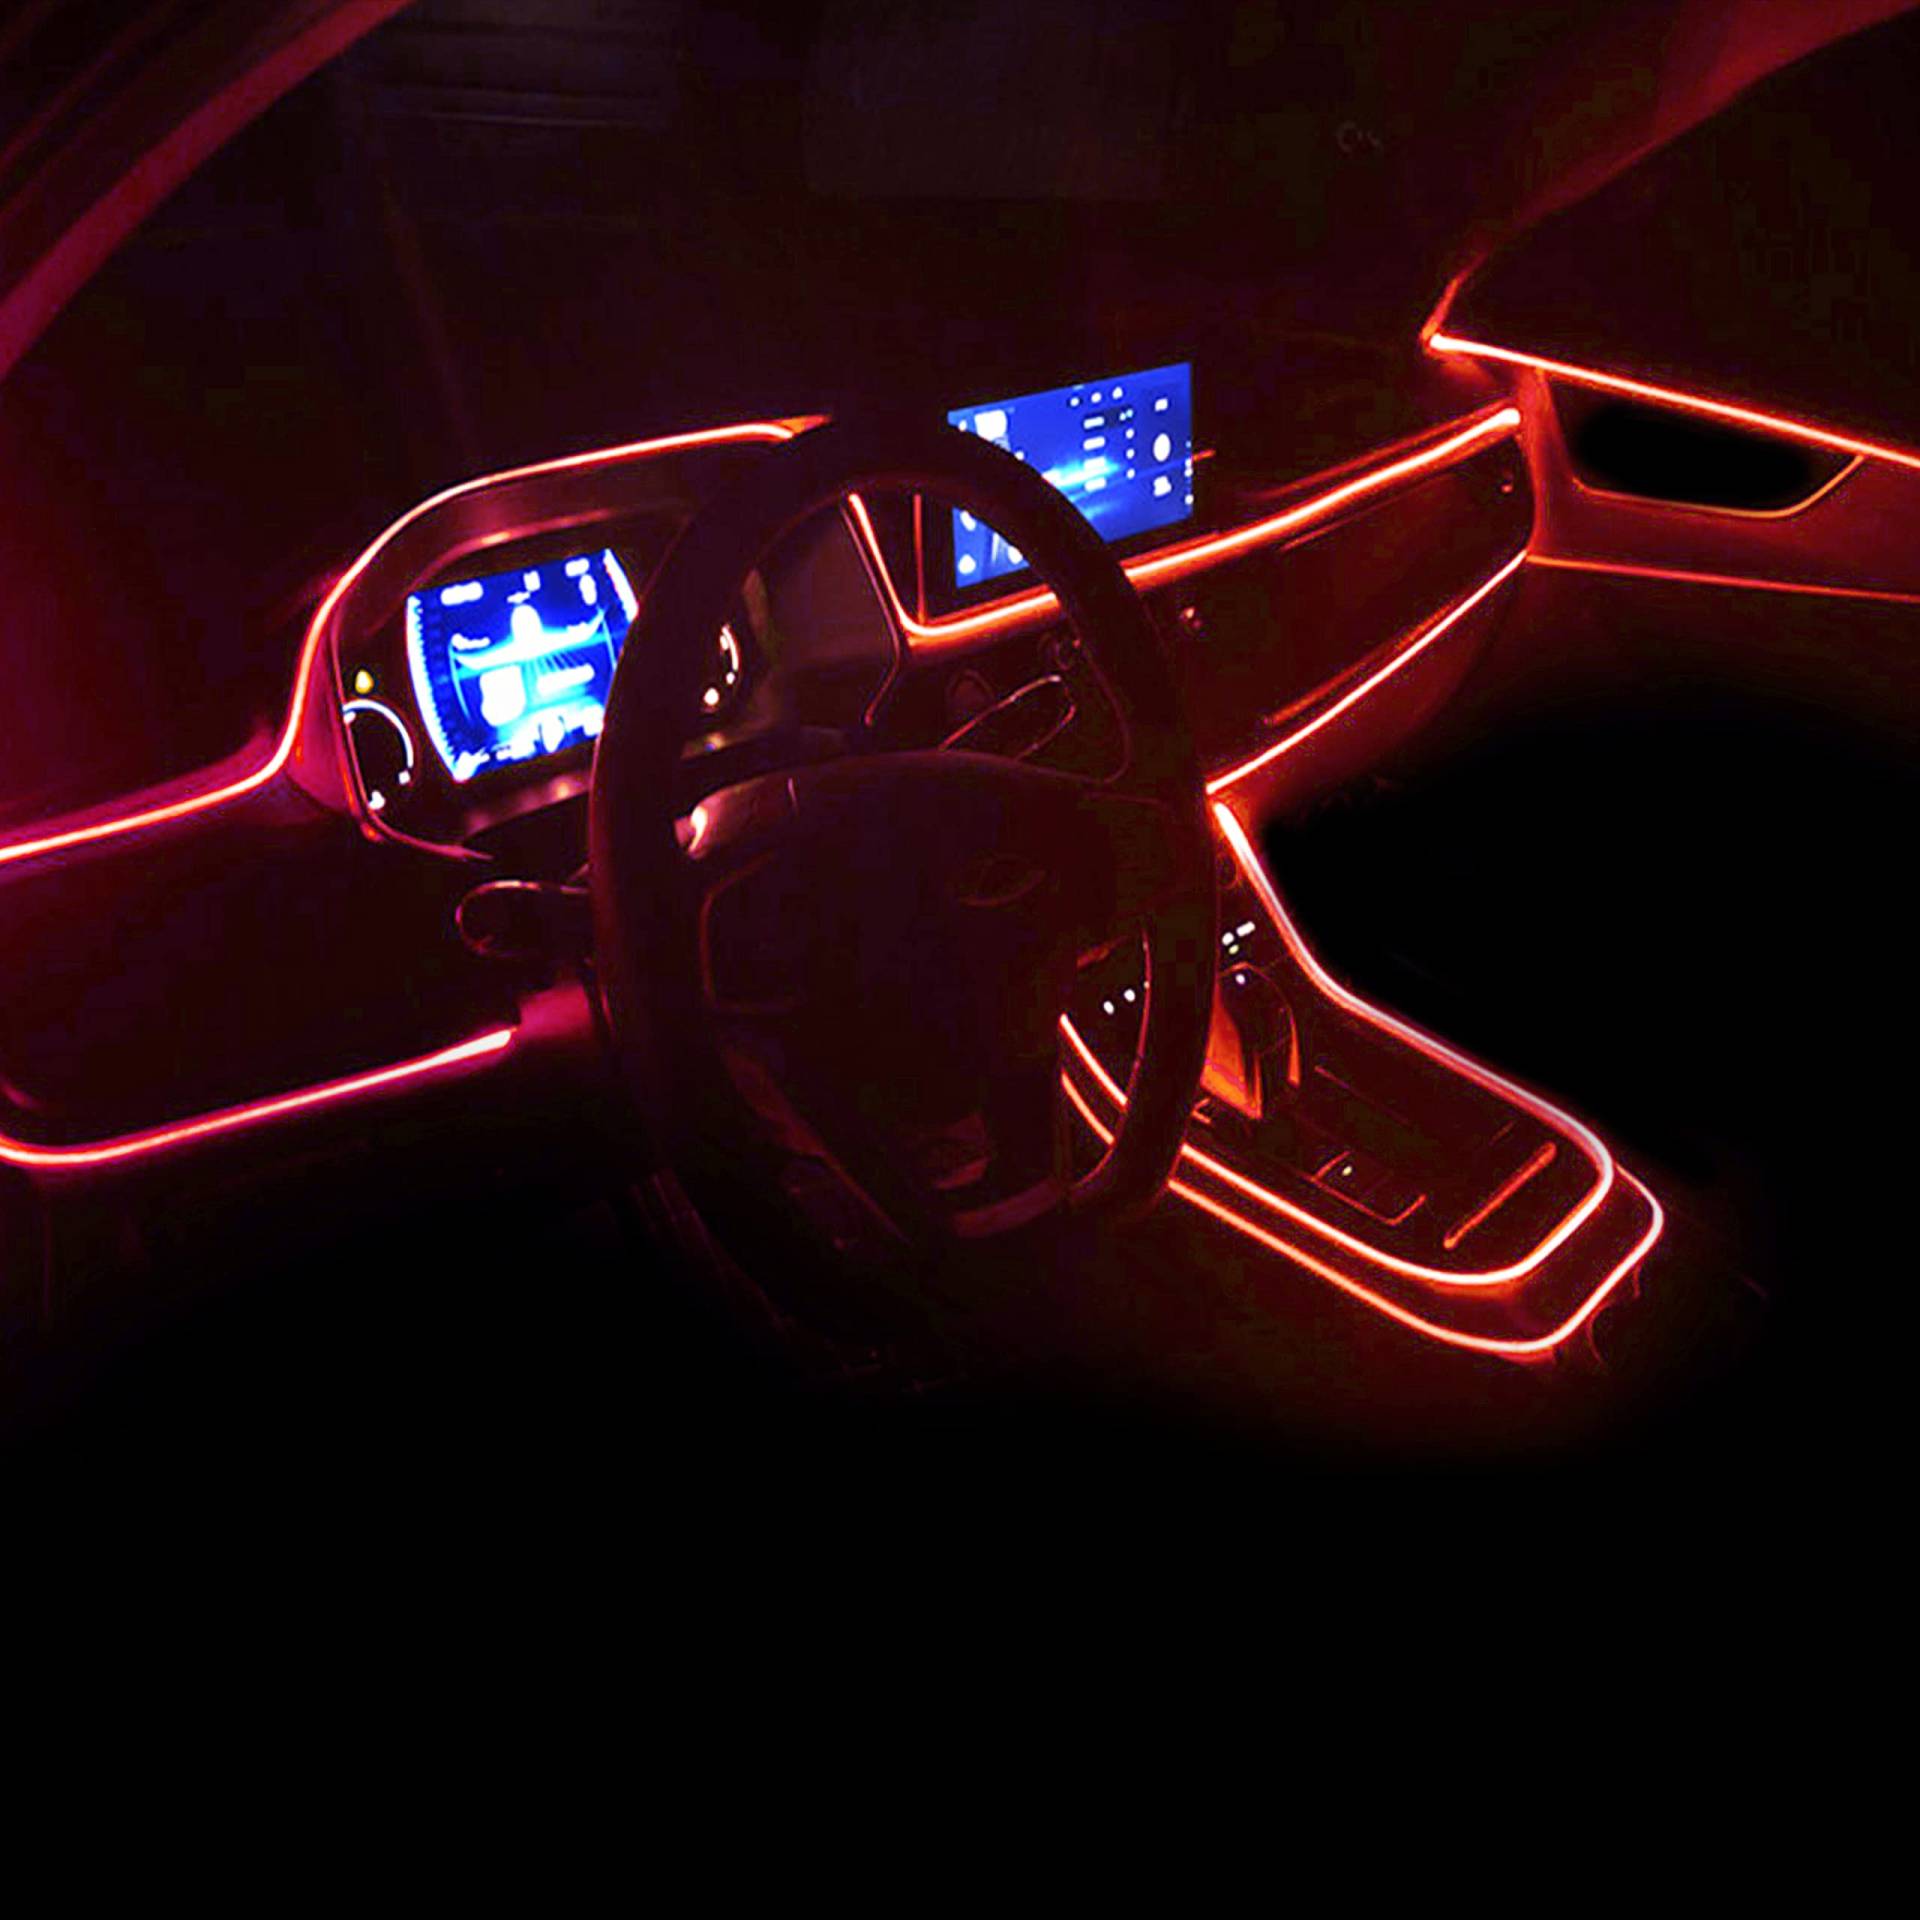 QAUBEN Auto Umgebungsbeleuchtung Glasfaserkabel 64 Farben Musik Sound Aktiv mit HF-Fernbedienung + APP-Steuerung Auto Dekorative Atmosphäre Beleuchtungsset DC 12V 1W 3m von QAUBEN